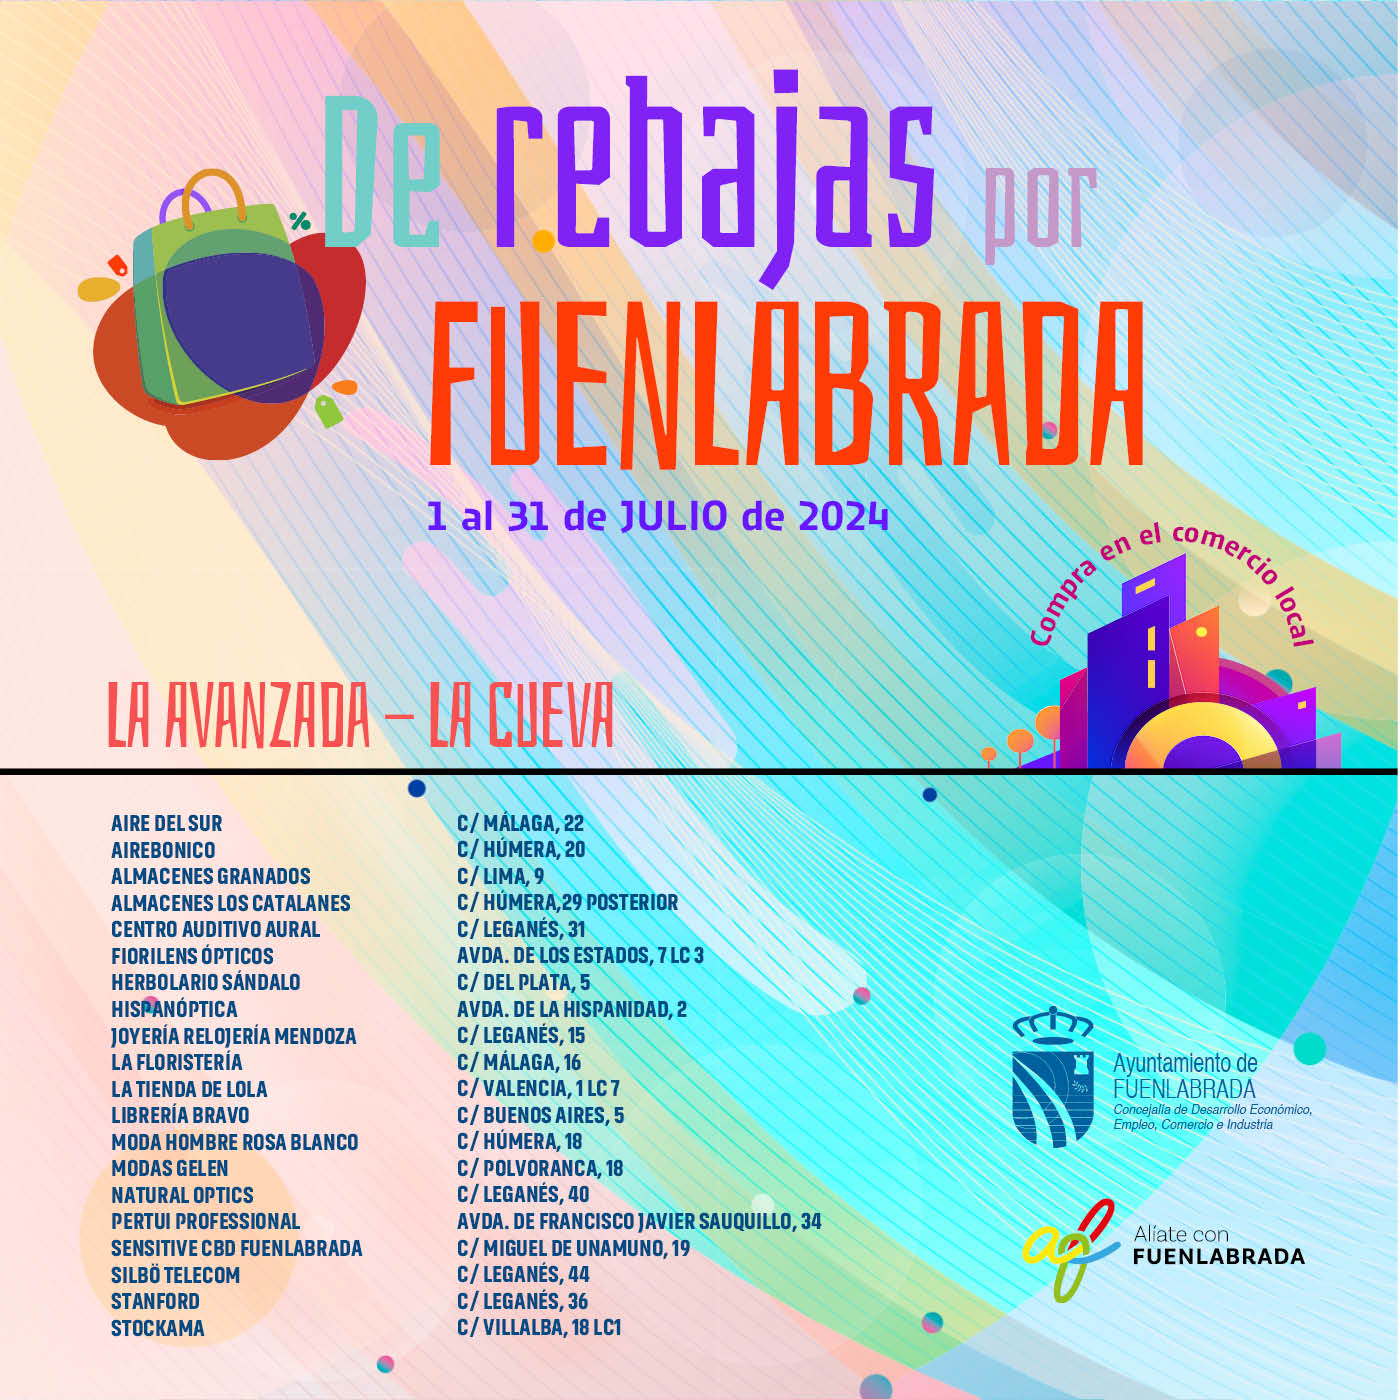 La campaña ¡De rebajas por Fuenlabrada! destaca la importancia de comprar localmente, con 84 establecimientos ofreciendo descuentos hasta el 31 de julio para fortalecer la economía de la ciudad.